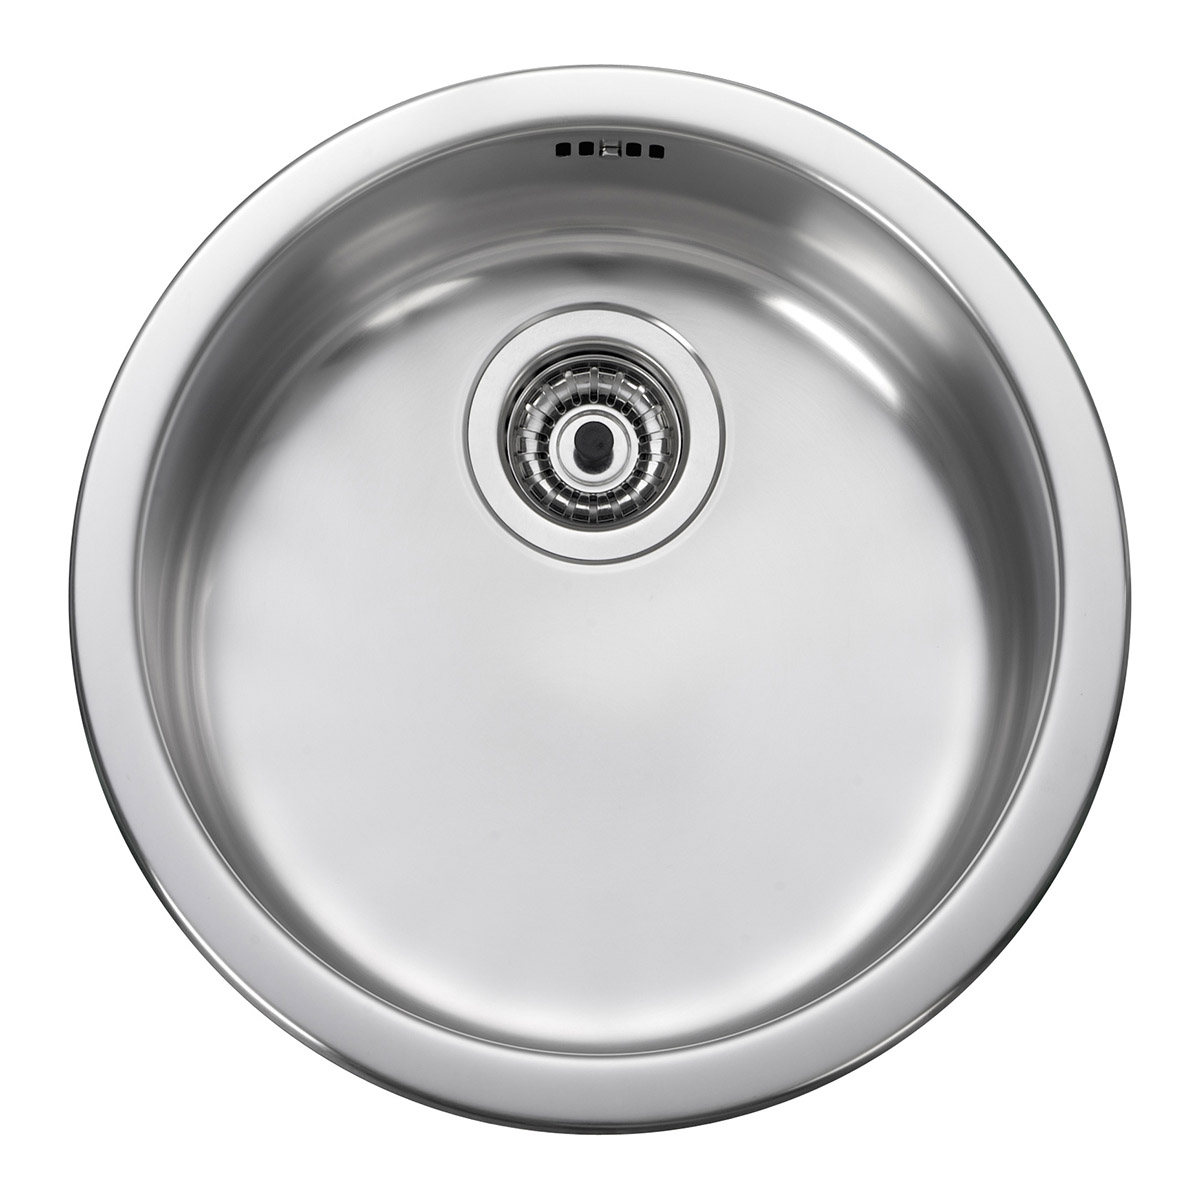 Ari round bowl kitchen sink in chrome